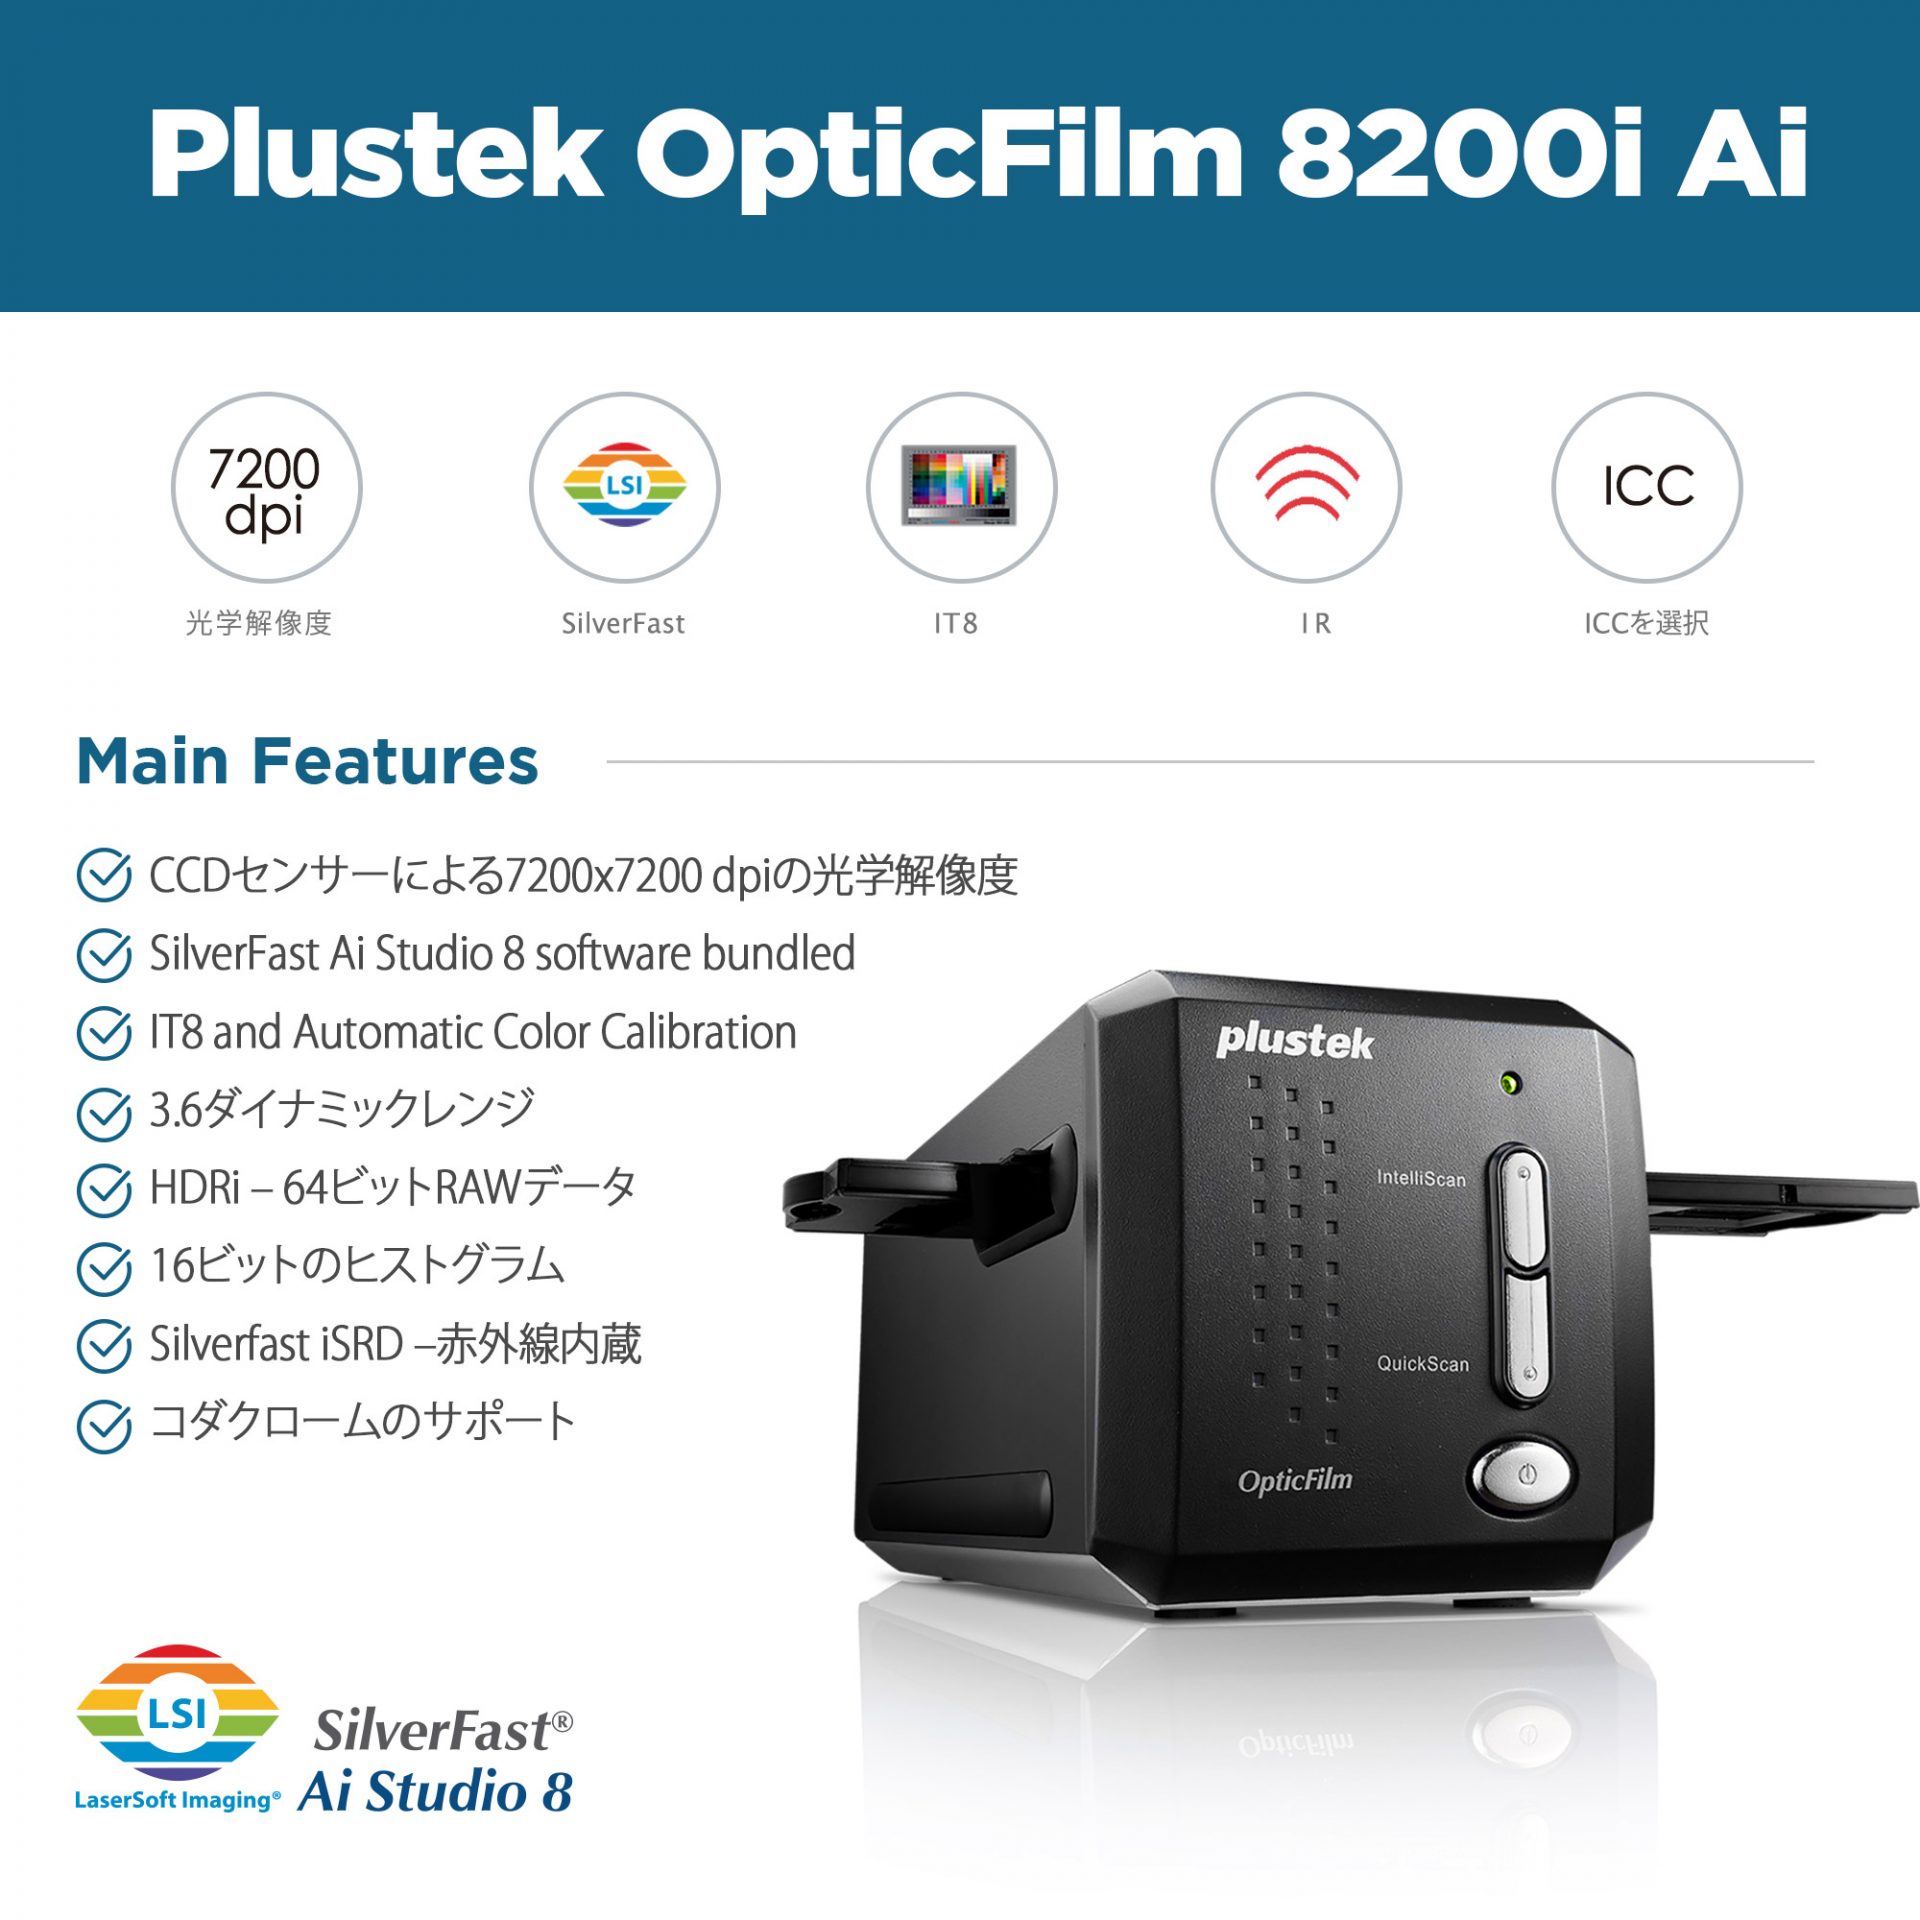 OpticFilm8200i Ai | 製品情報 | 株式会社アイテックス